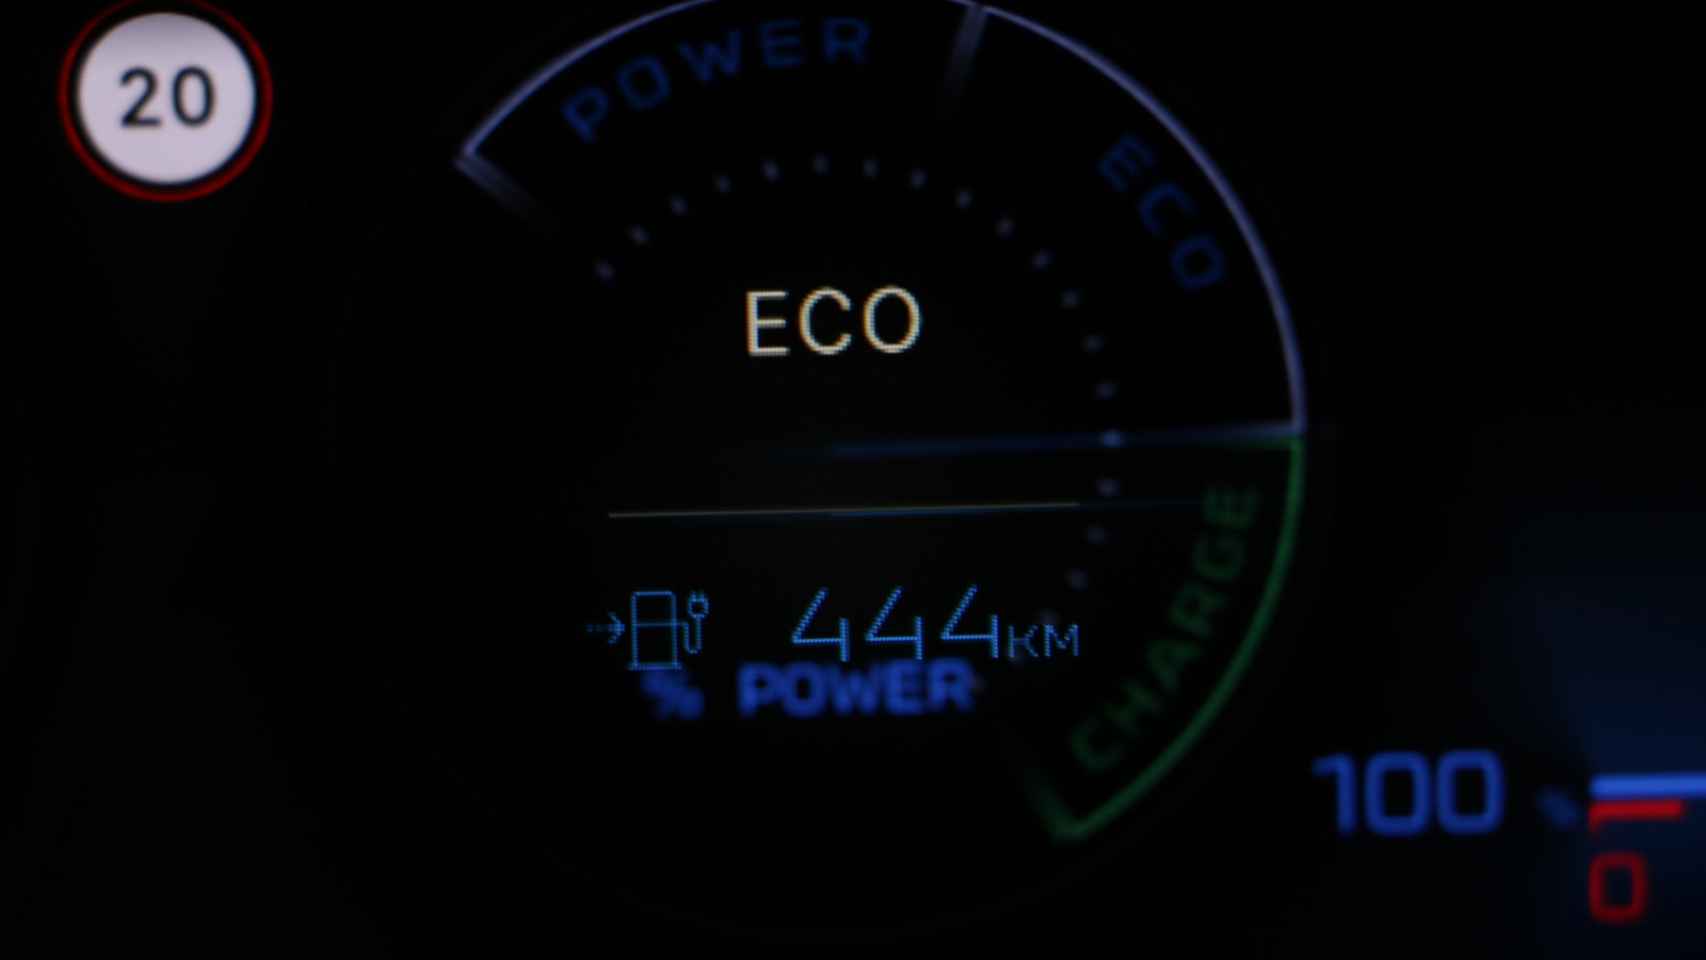 El ordenador de viaje marca 444 kilómetros de autonomía.